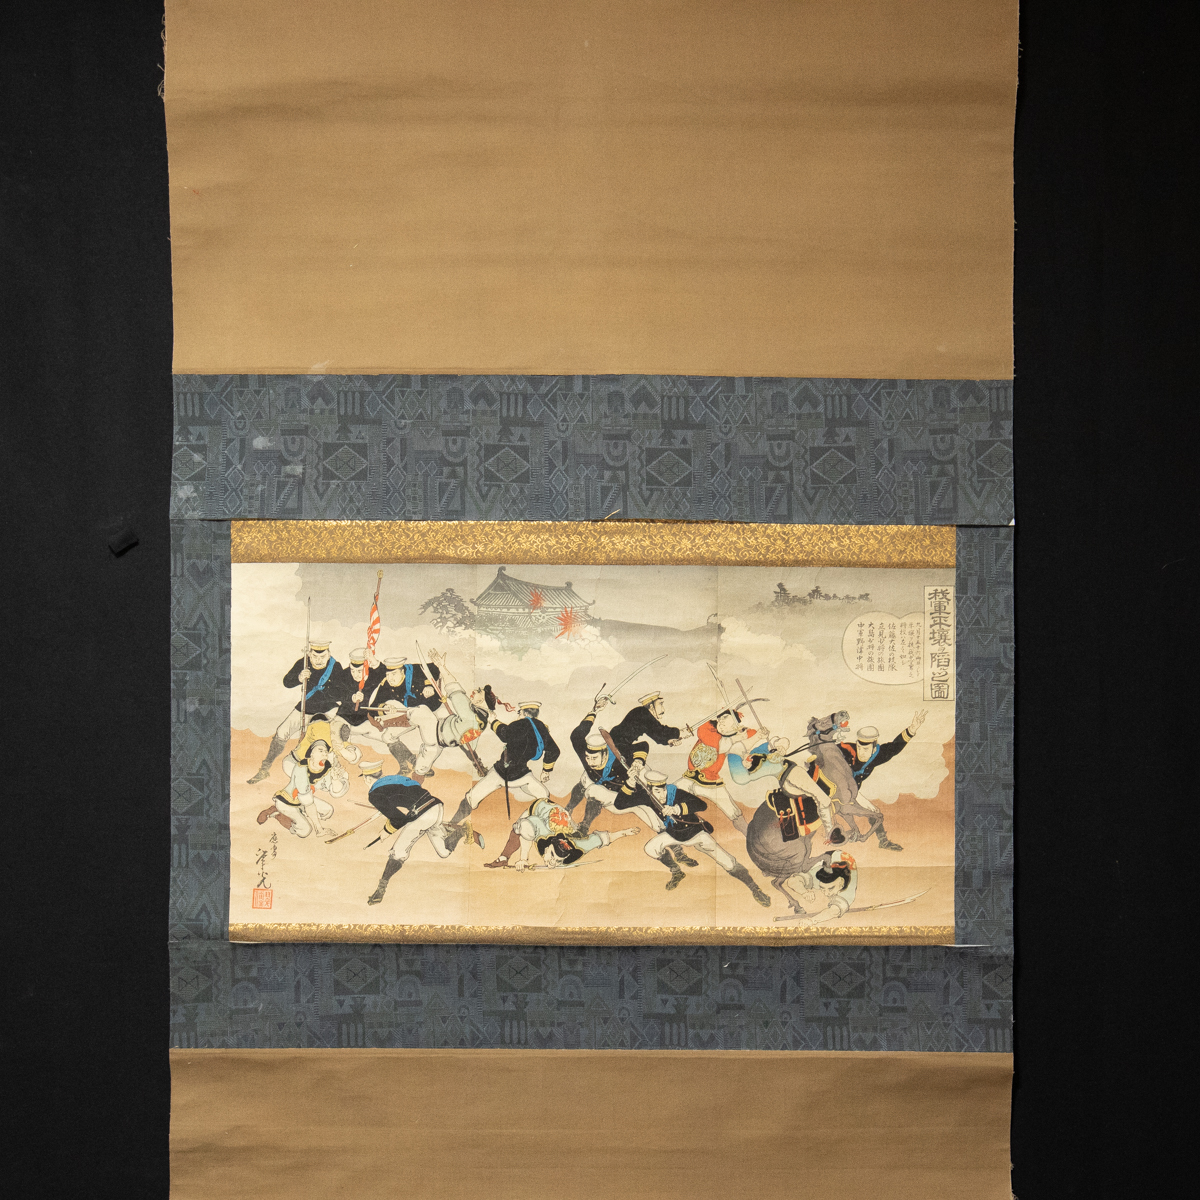 601 [طباعة] توشيميتسو فوكوشيما, رسم توضيحي لسيطرة جيشنا على بيونغ يانغ, الحرب الصينية اليابانية, على نطاق واسع, تلوين, أوكييو إي, مطبعة, آحرون